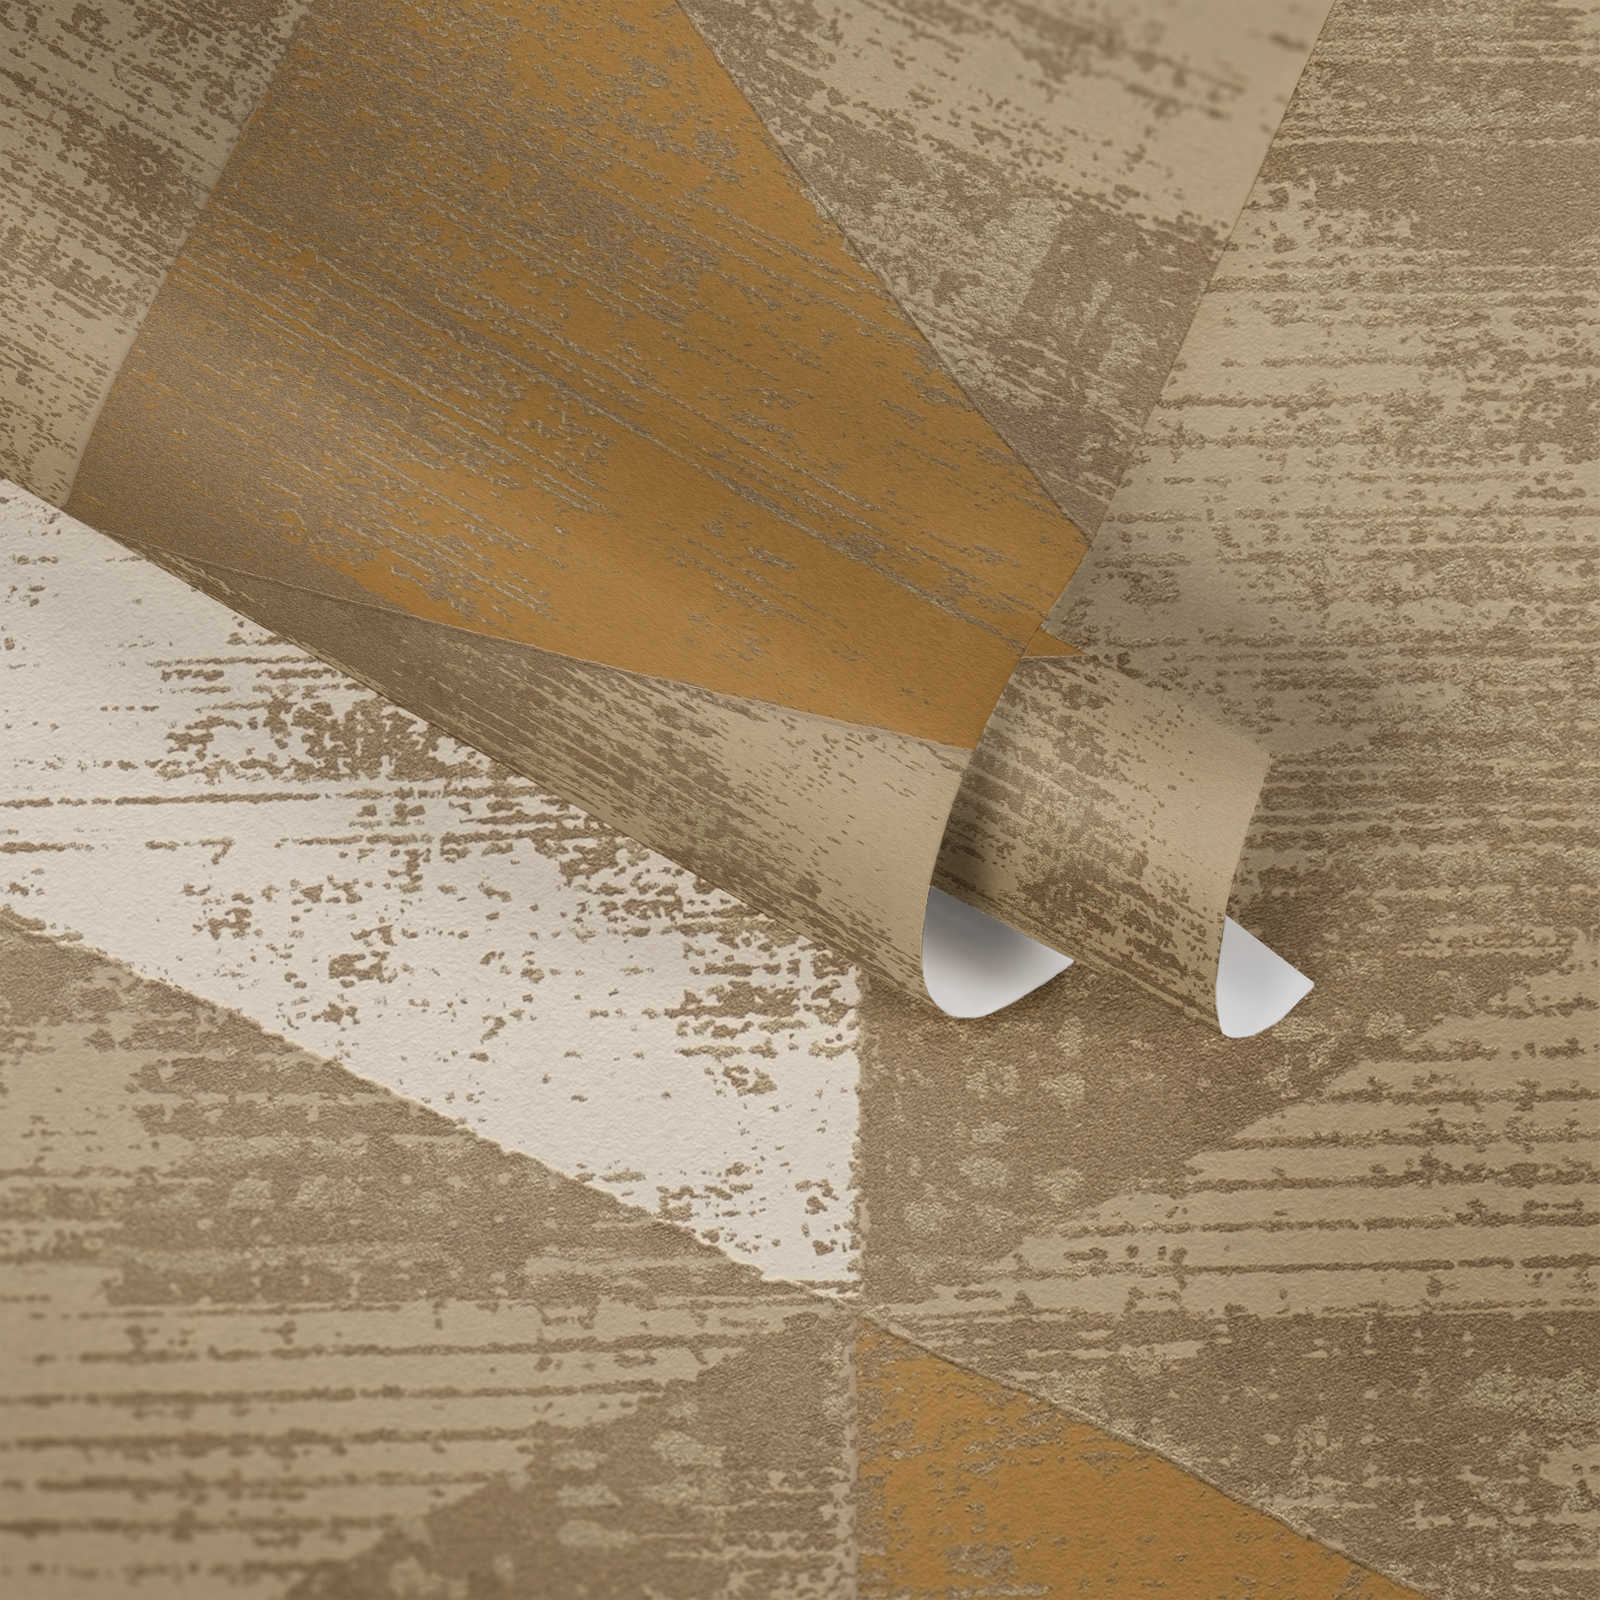             Behang industriële stijl met rustieke metallic look - metallic, beige
        